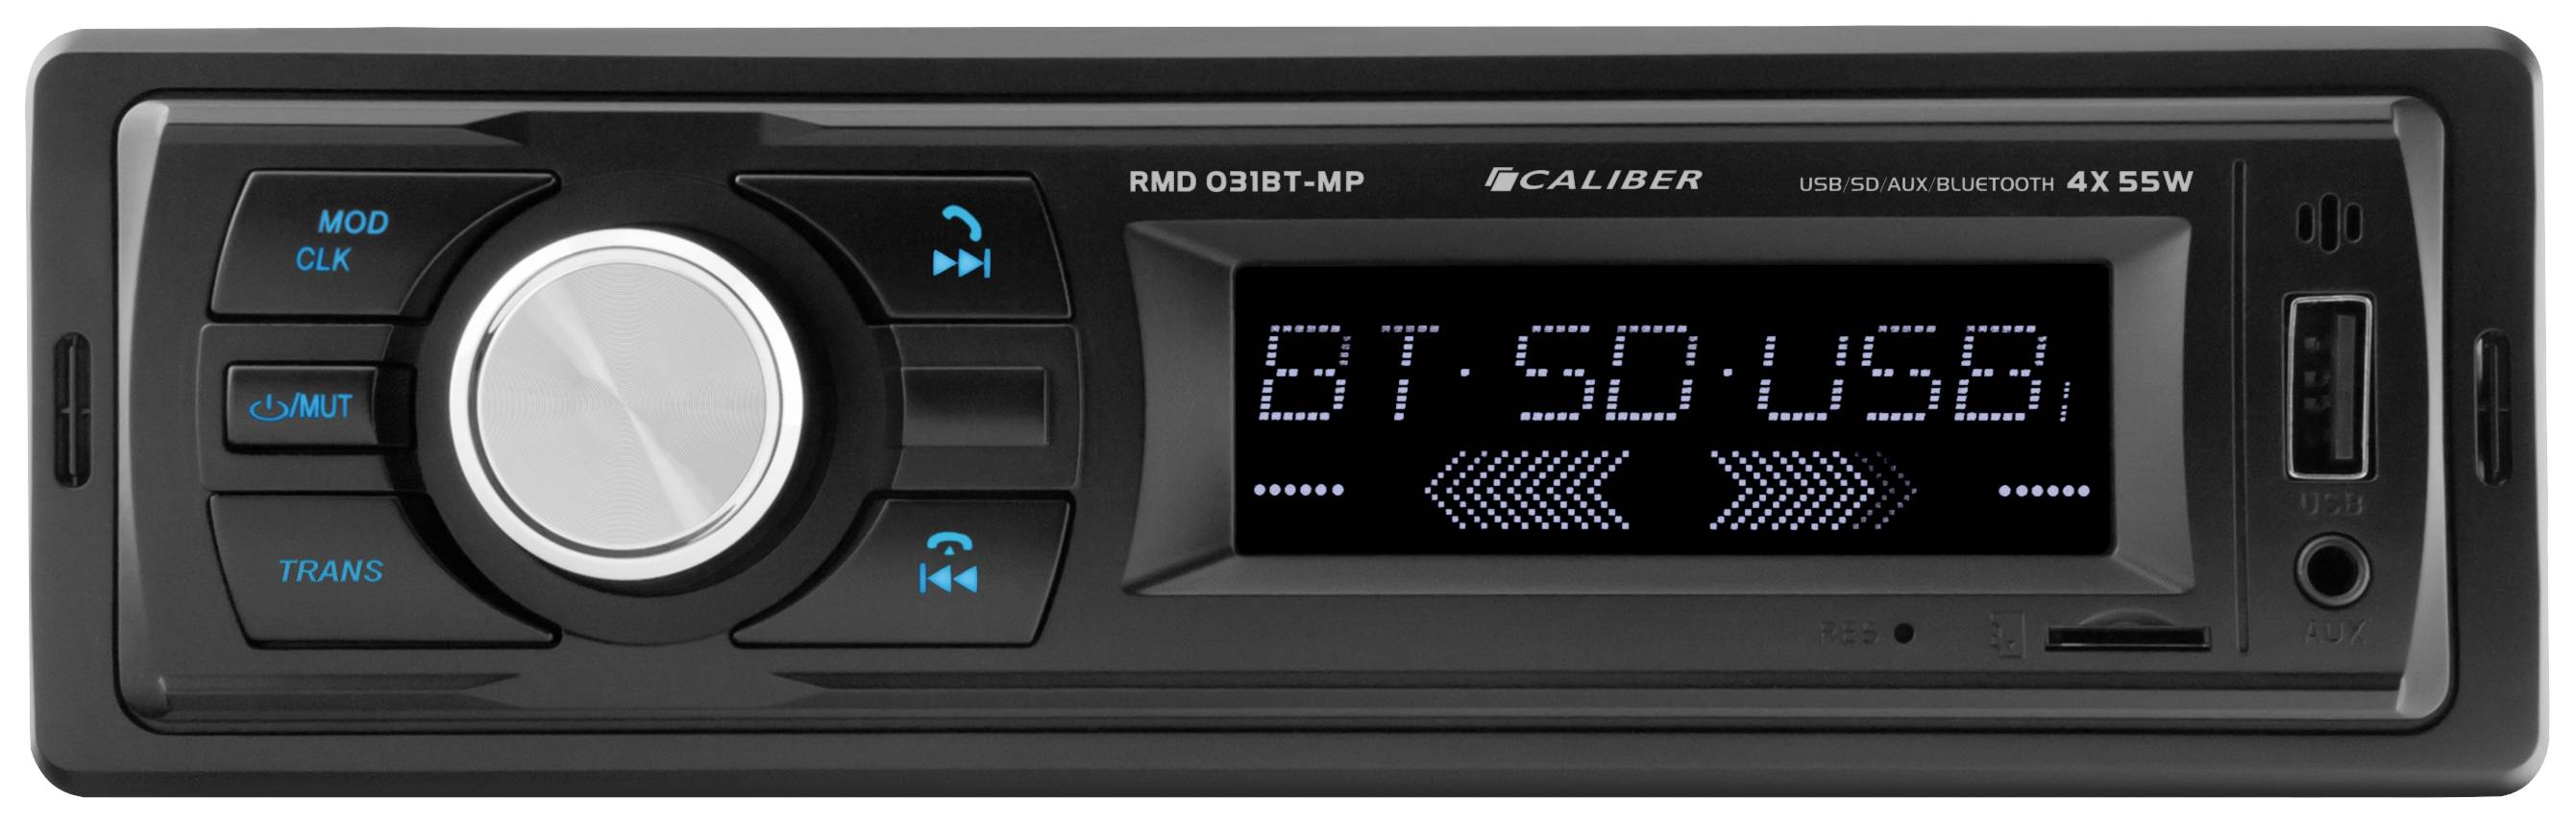 Caliber RMD031BT-MP Autoradio Bluetooth Freisprecheinrichtung MP3 USB  schwarz